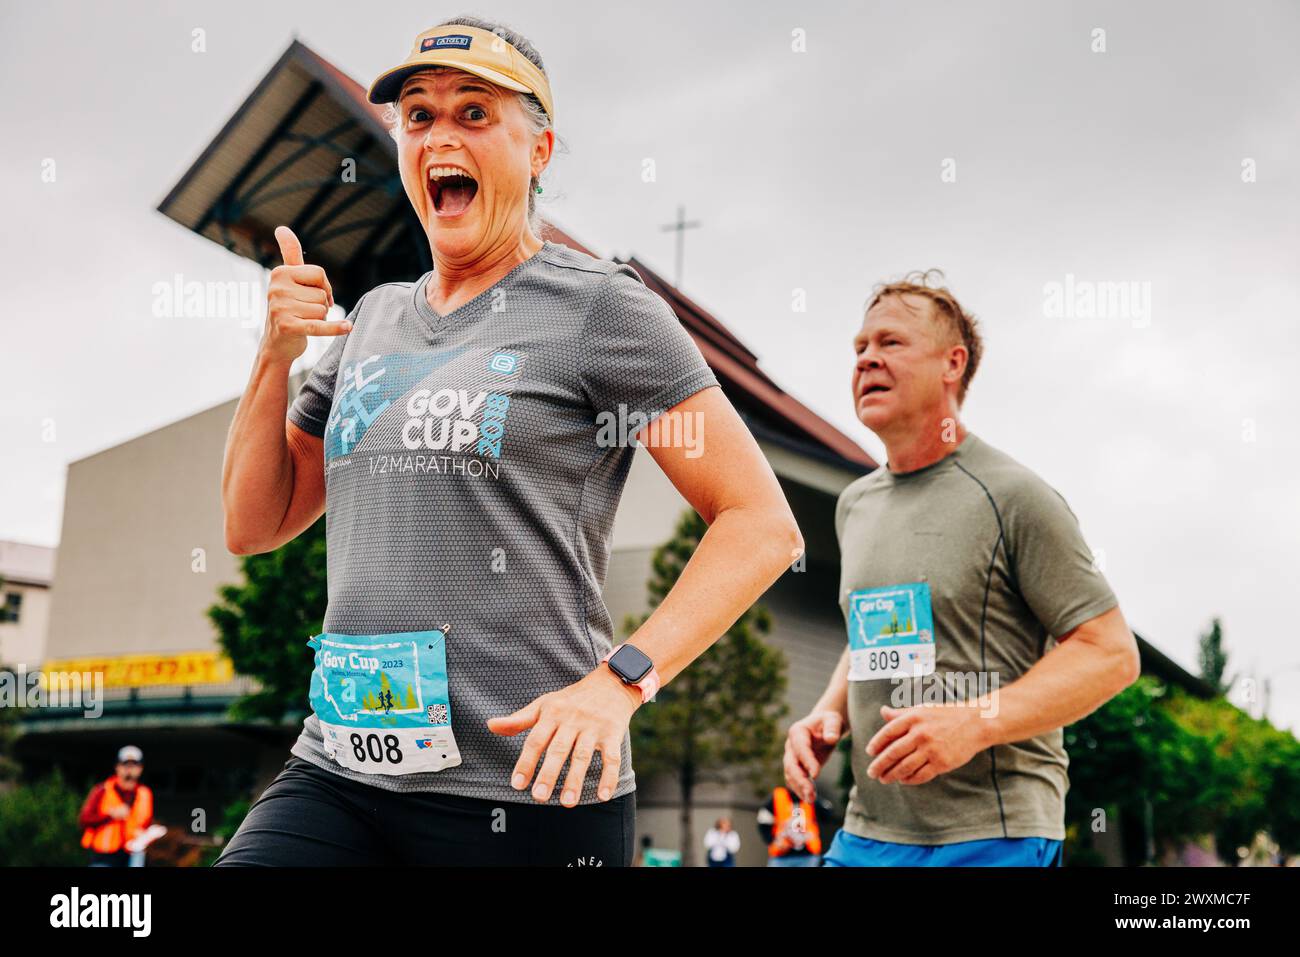 Glückliche und aufgeregte Frau, die den Governor's Cup Marathon läuft Stockfoto